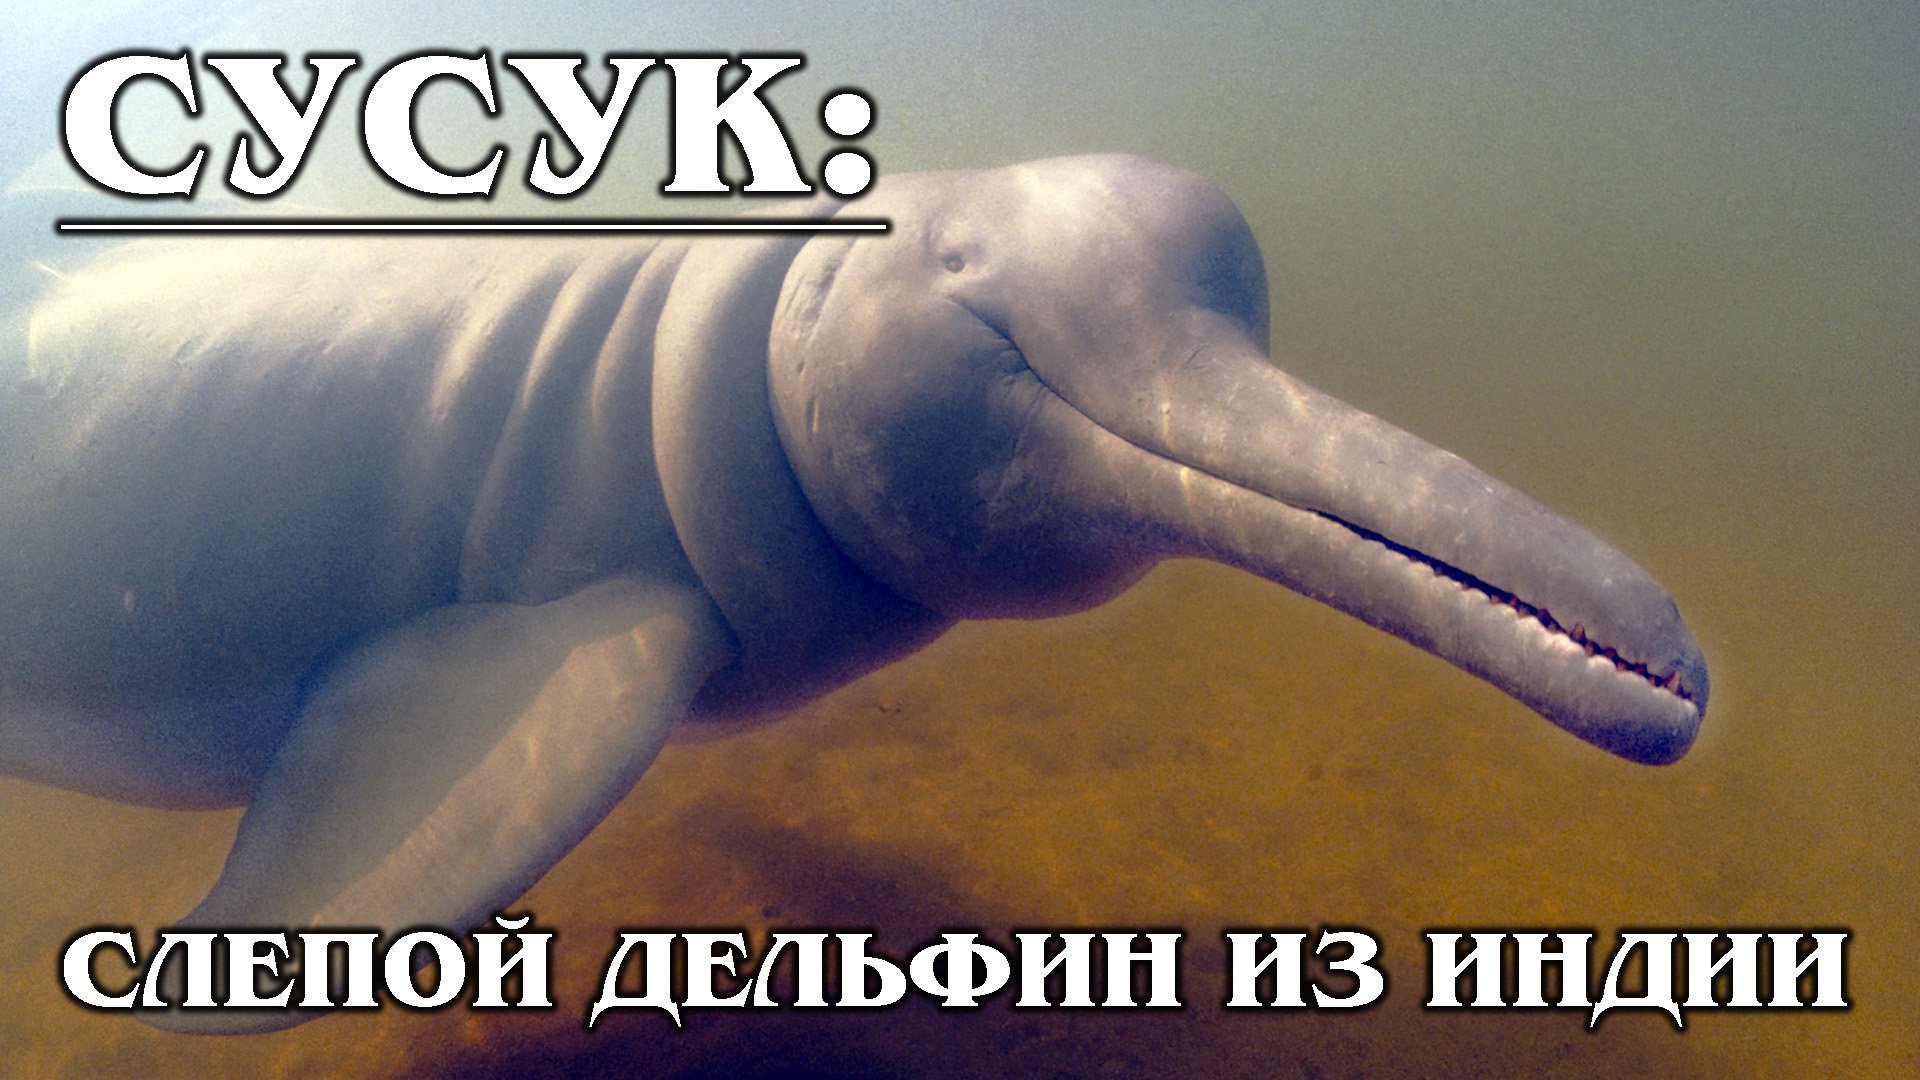 СУСУК: "Слепой" и очень редкий дельфин из реки Ганг | Интересные факты про дельфинов и животных